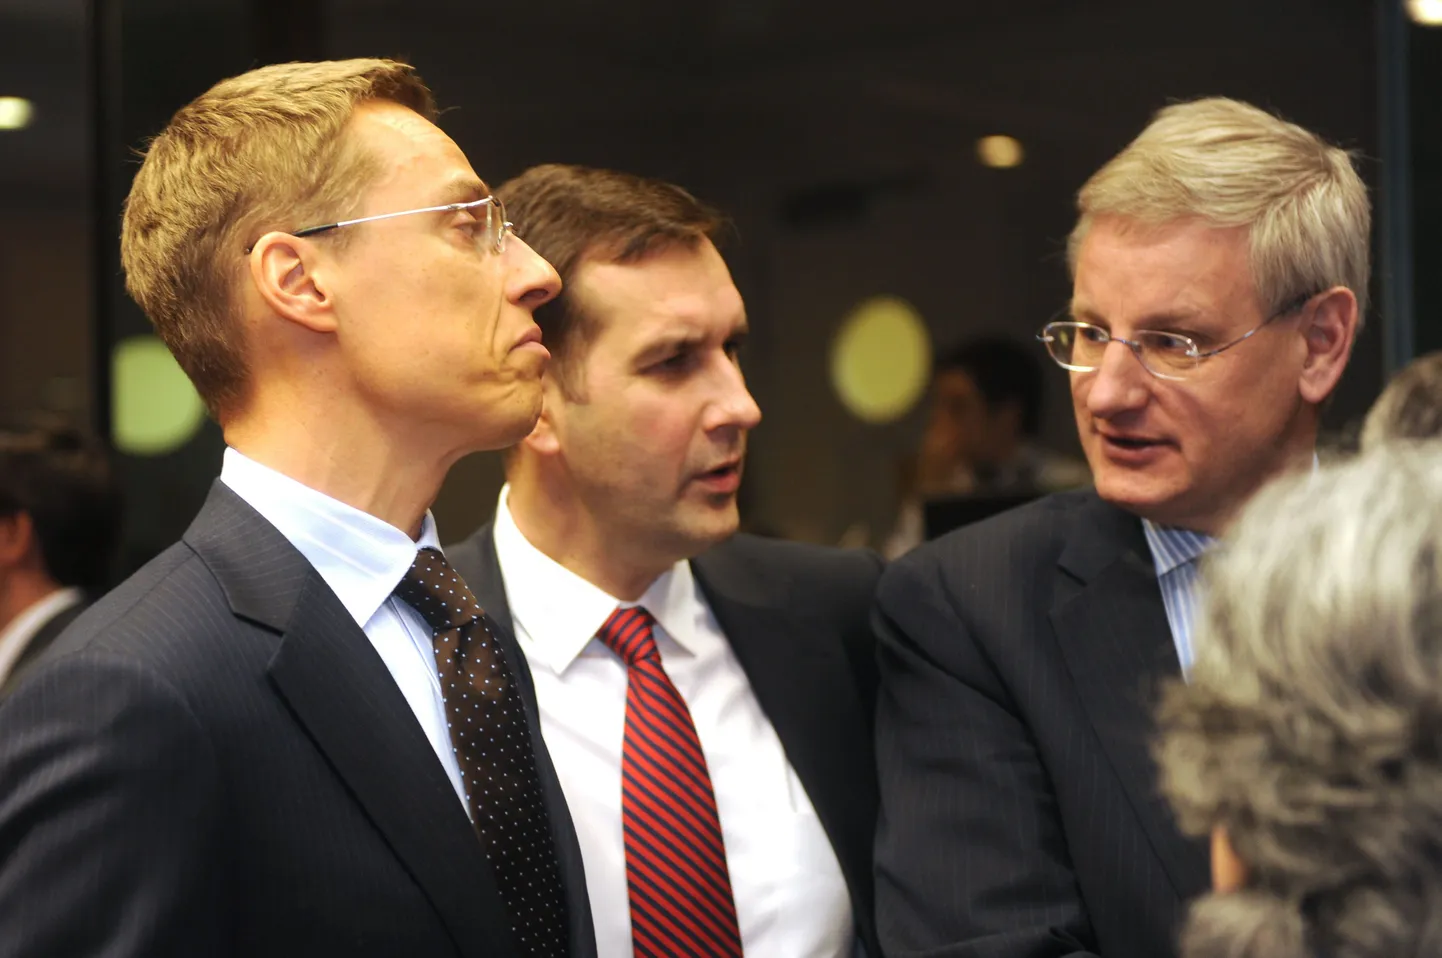 Läti välisminister Maris Riekstinš kolleegide keskel. Tema kõrval seisavad Soome välisminister Alexander Stubb (vasakul) ja Rootsi välisminister Carl Bildt (paremal).